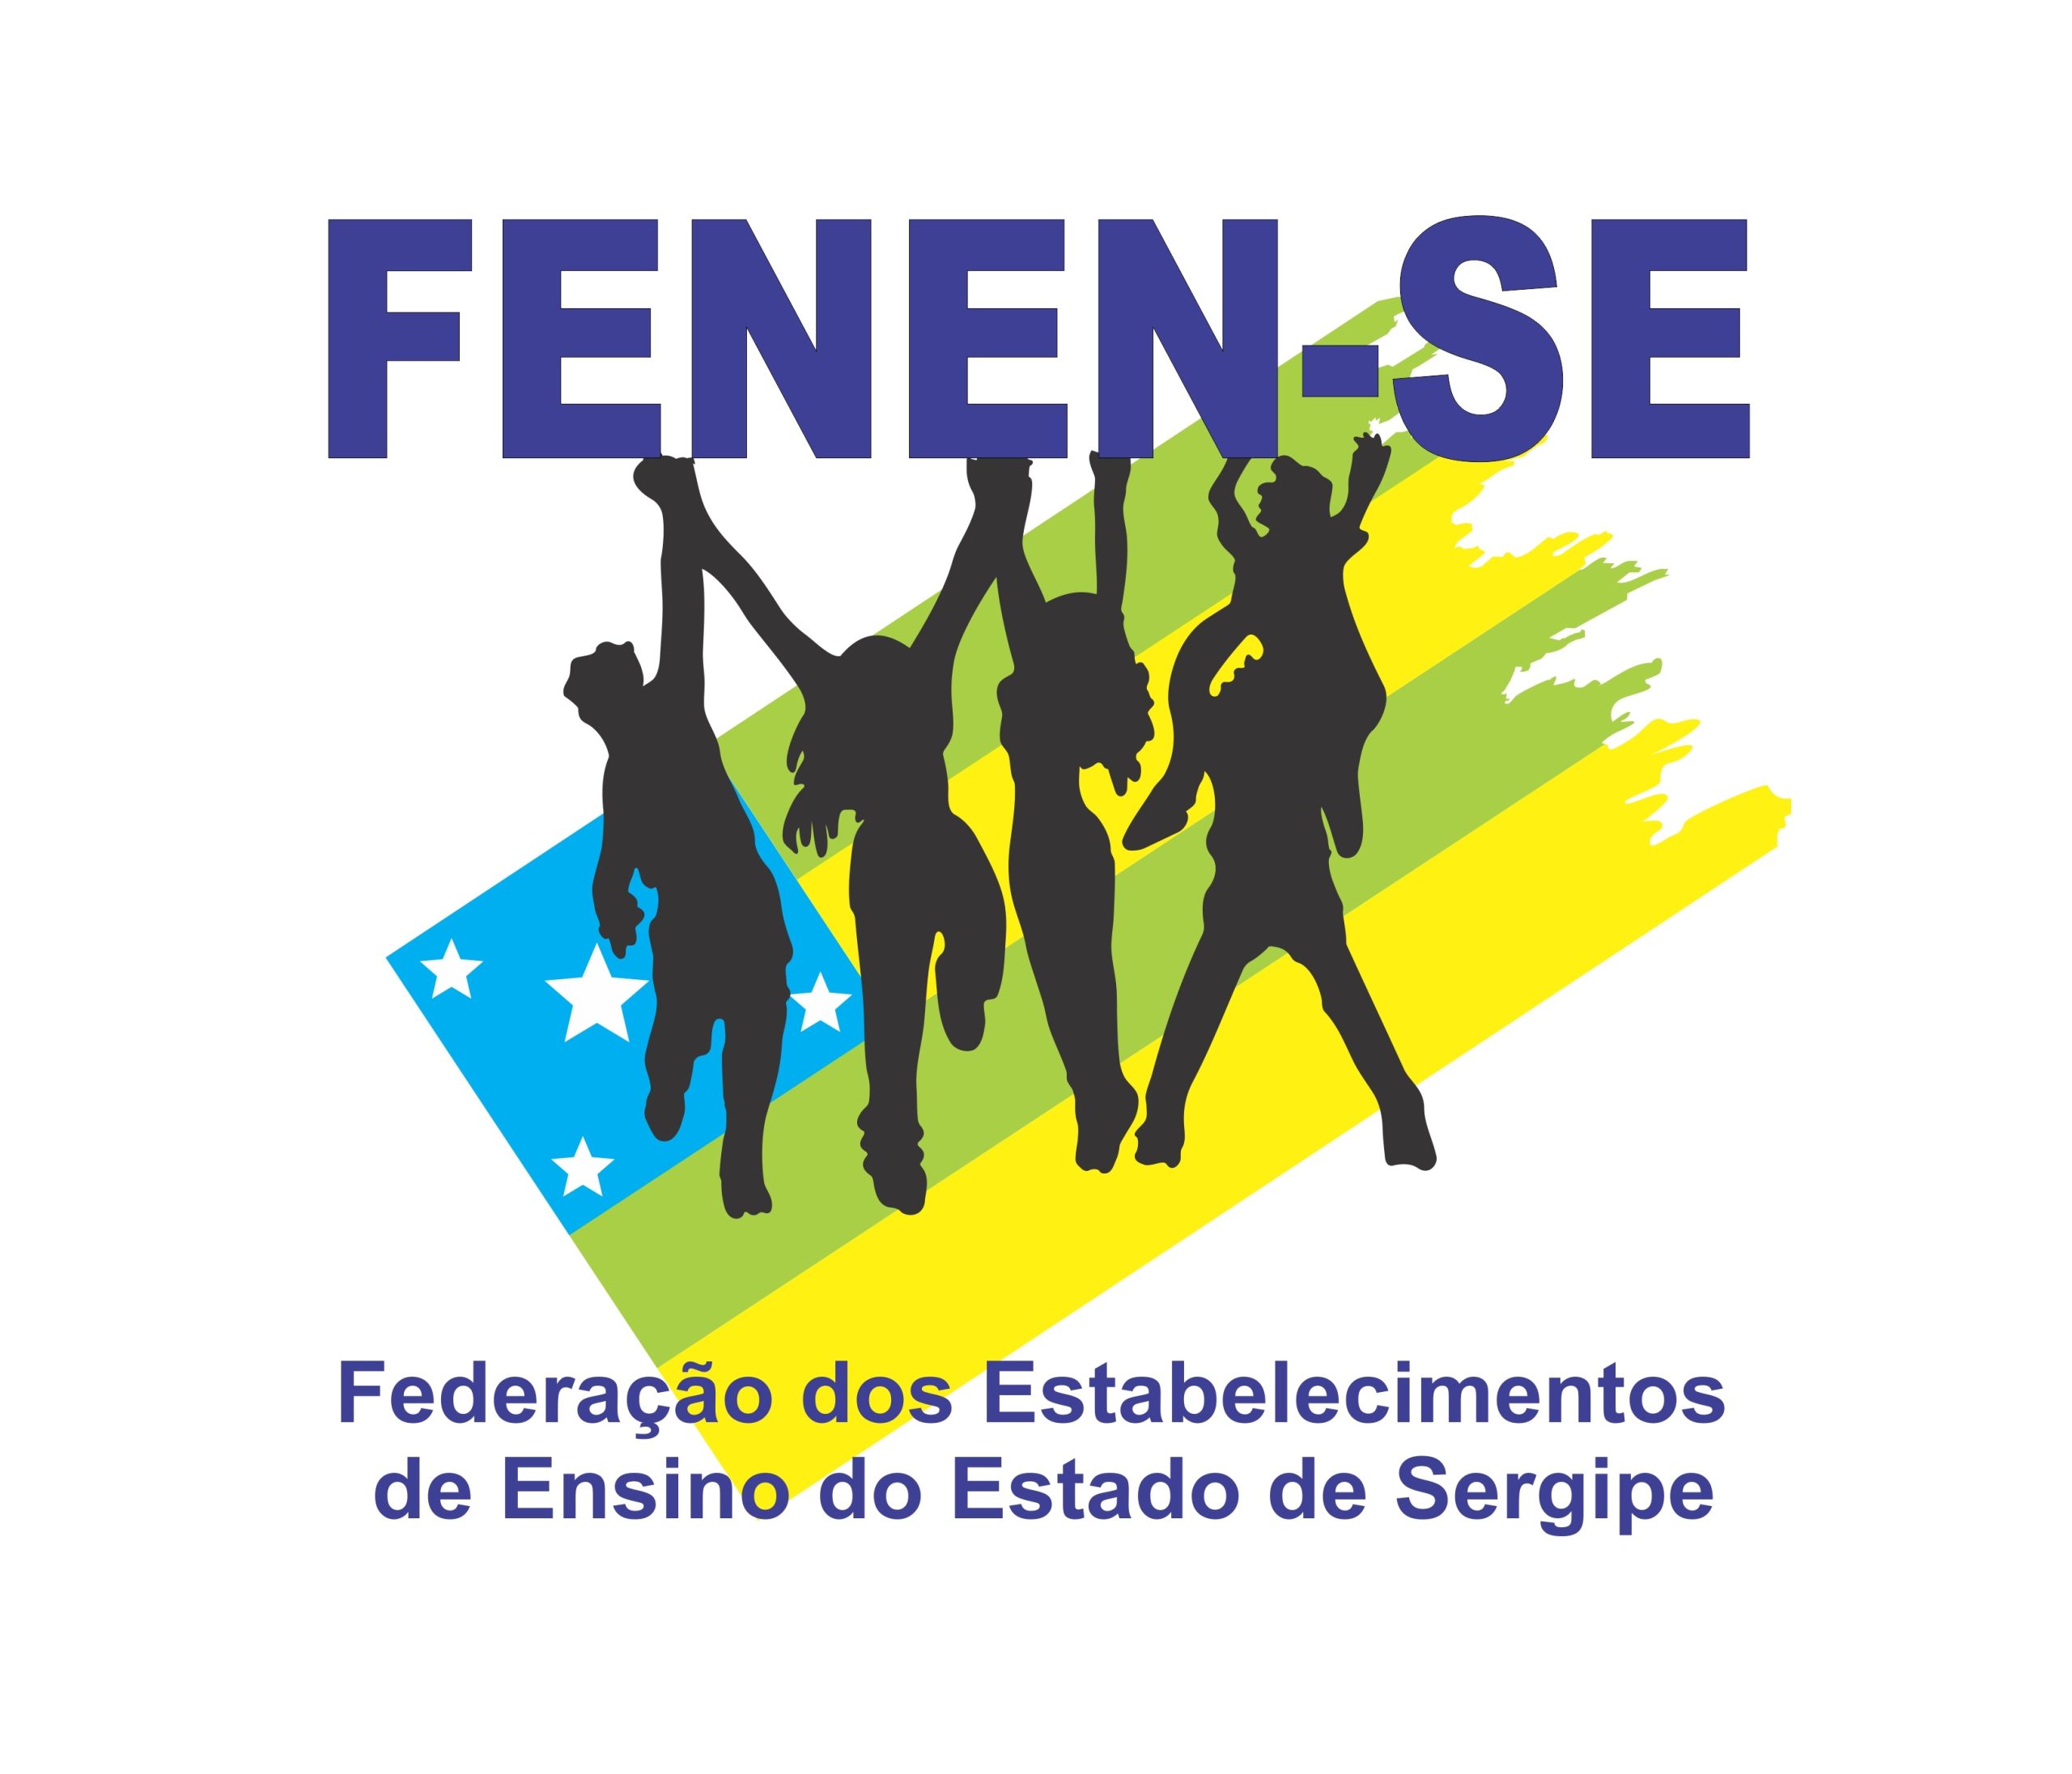 Federação dos Estabelecimentos de Ensino do Estado de Sergipe